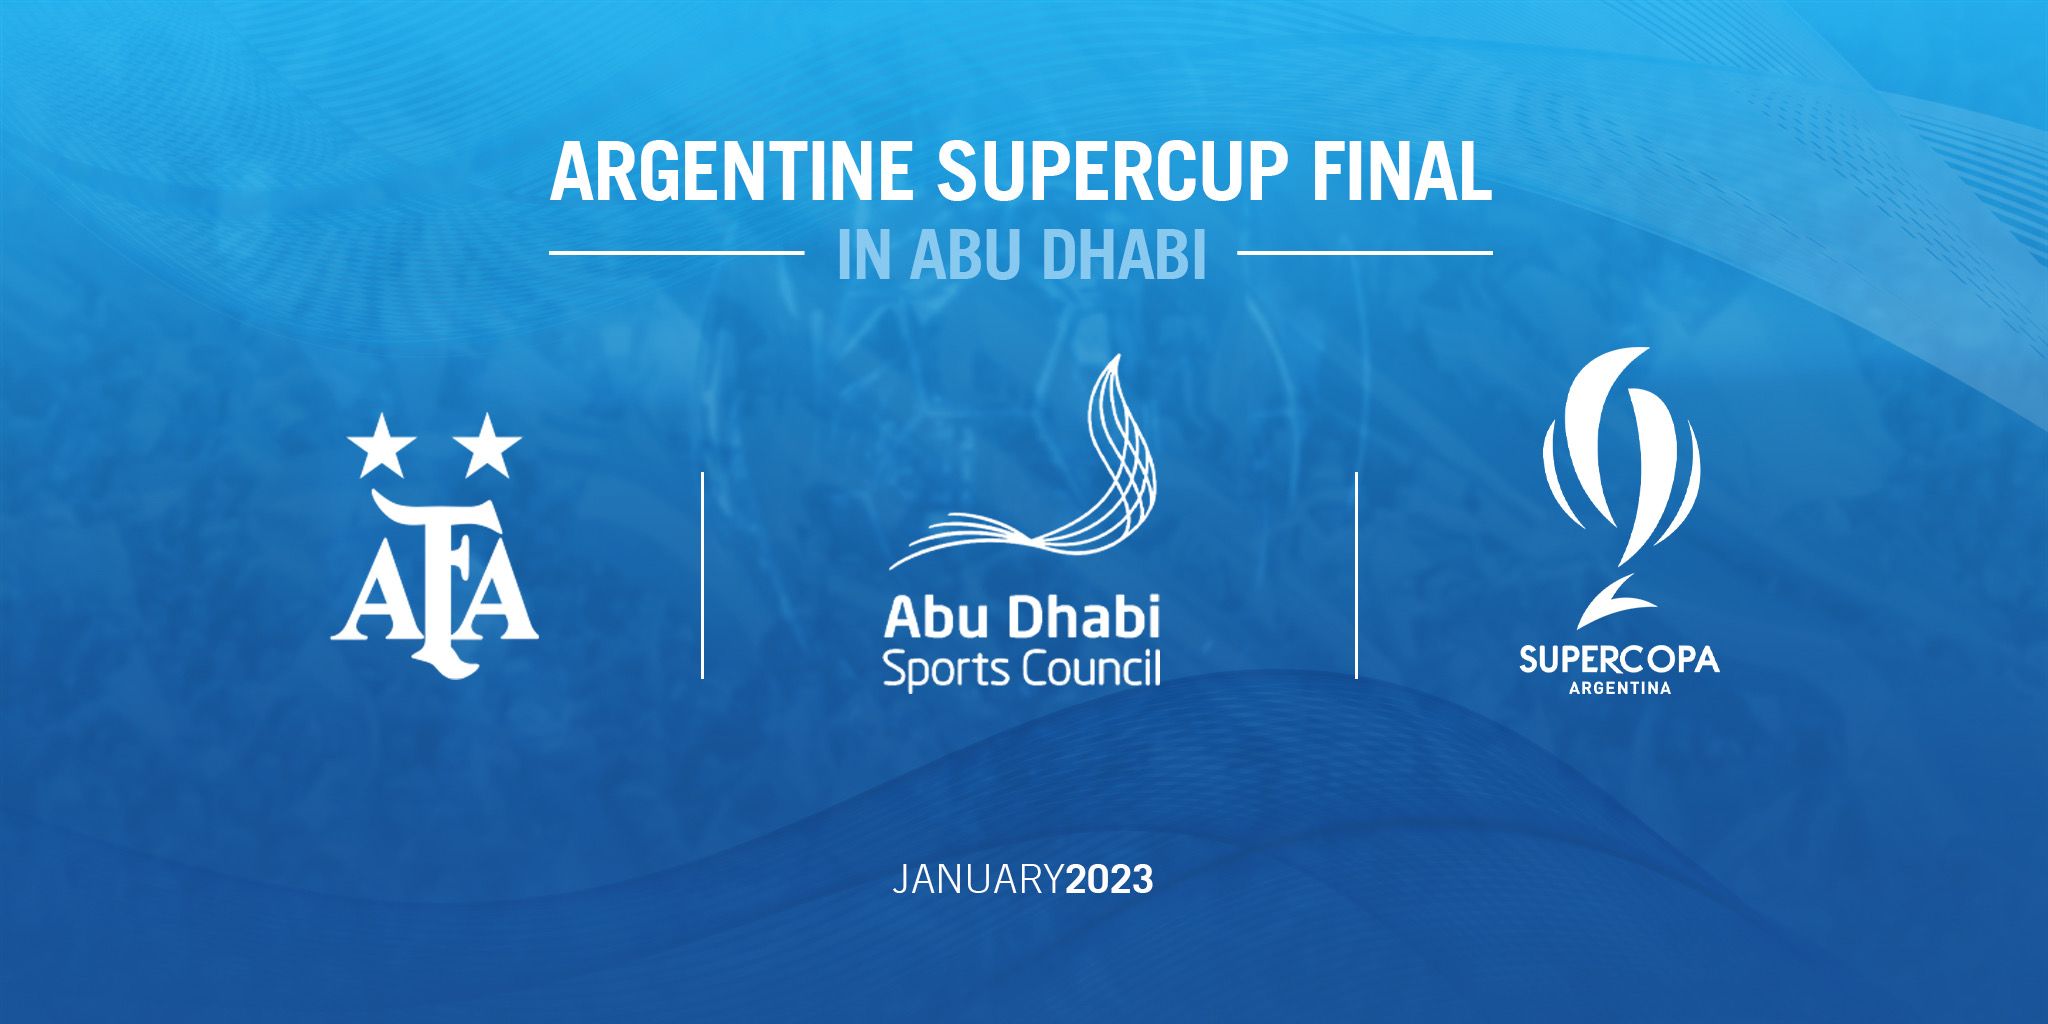 Oficial: la Supercopa Argentina se jugará en Abu Dhabi en enero de 2023 -  Infobae